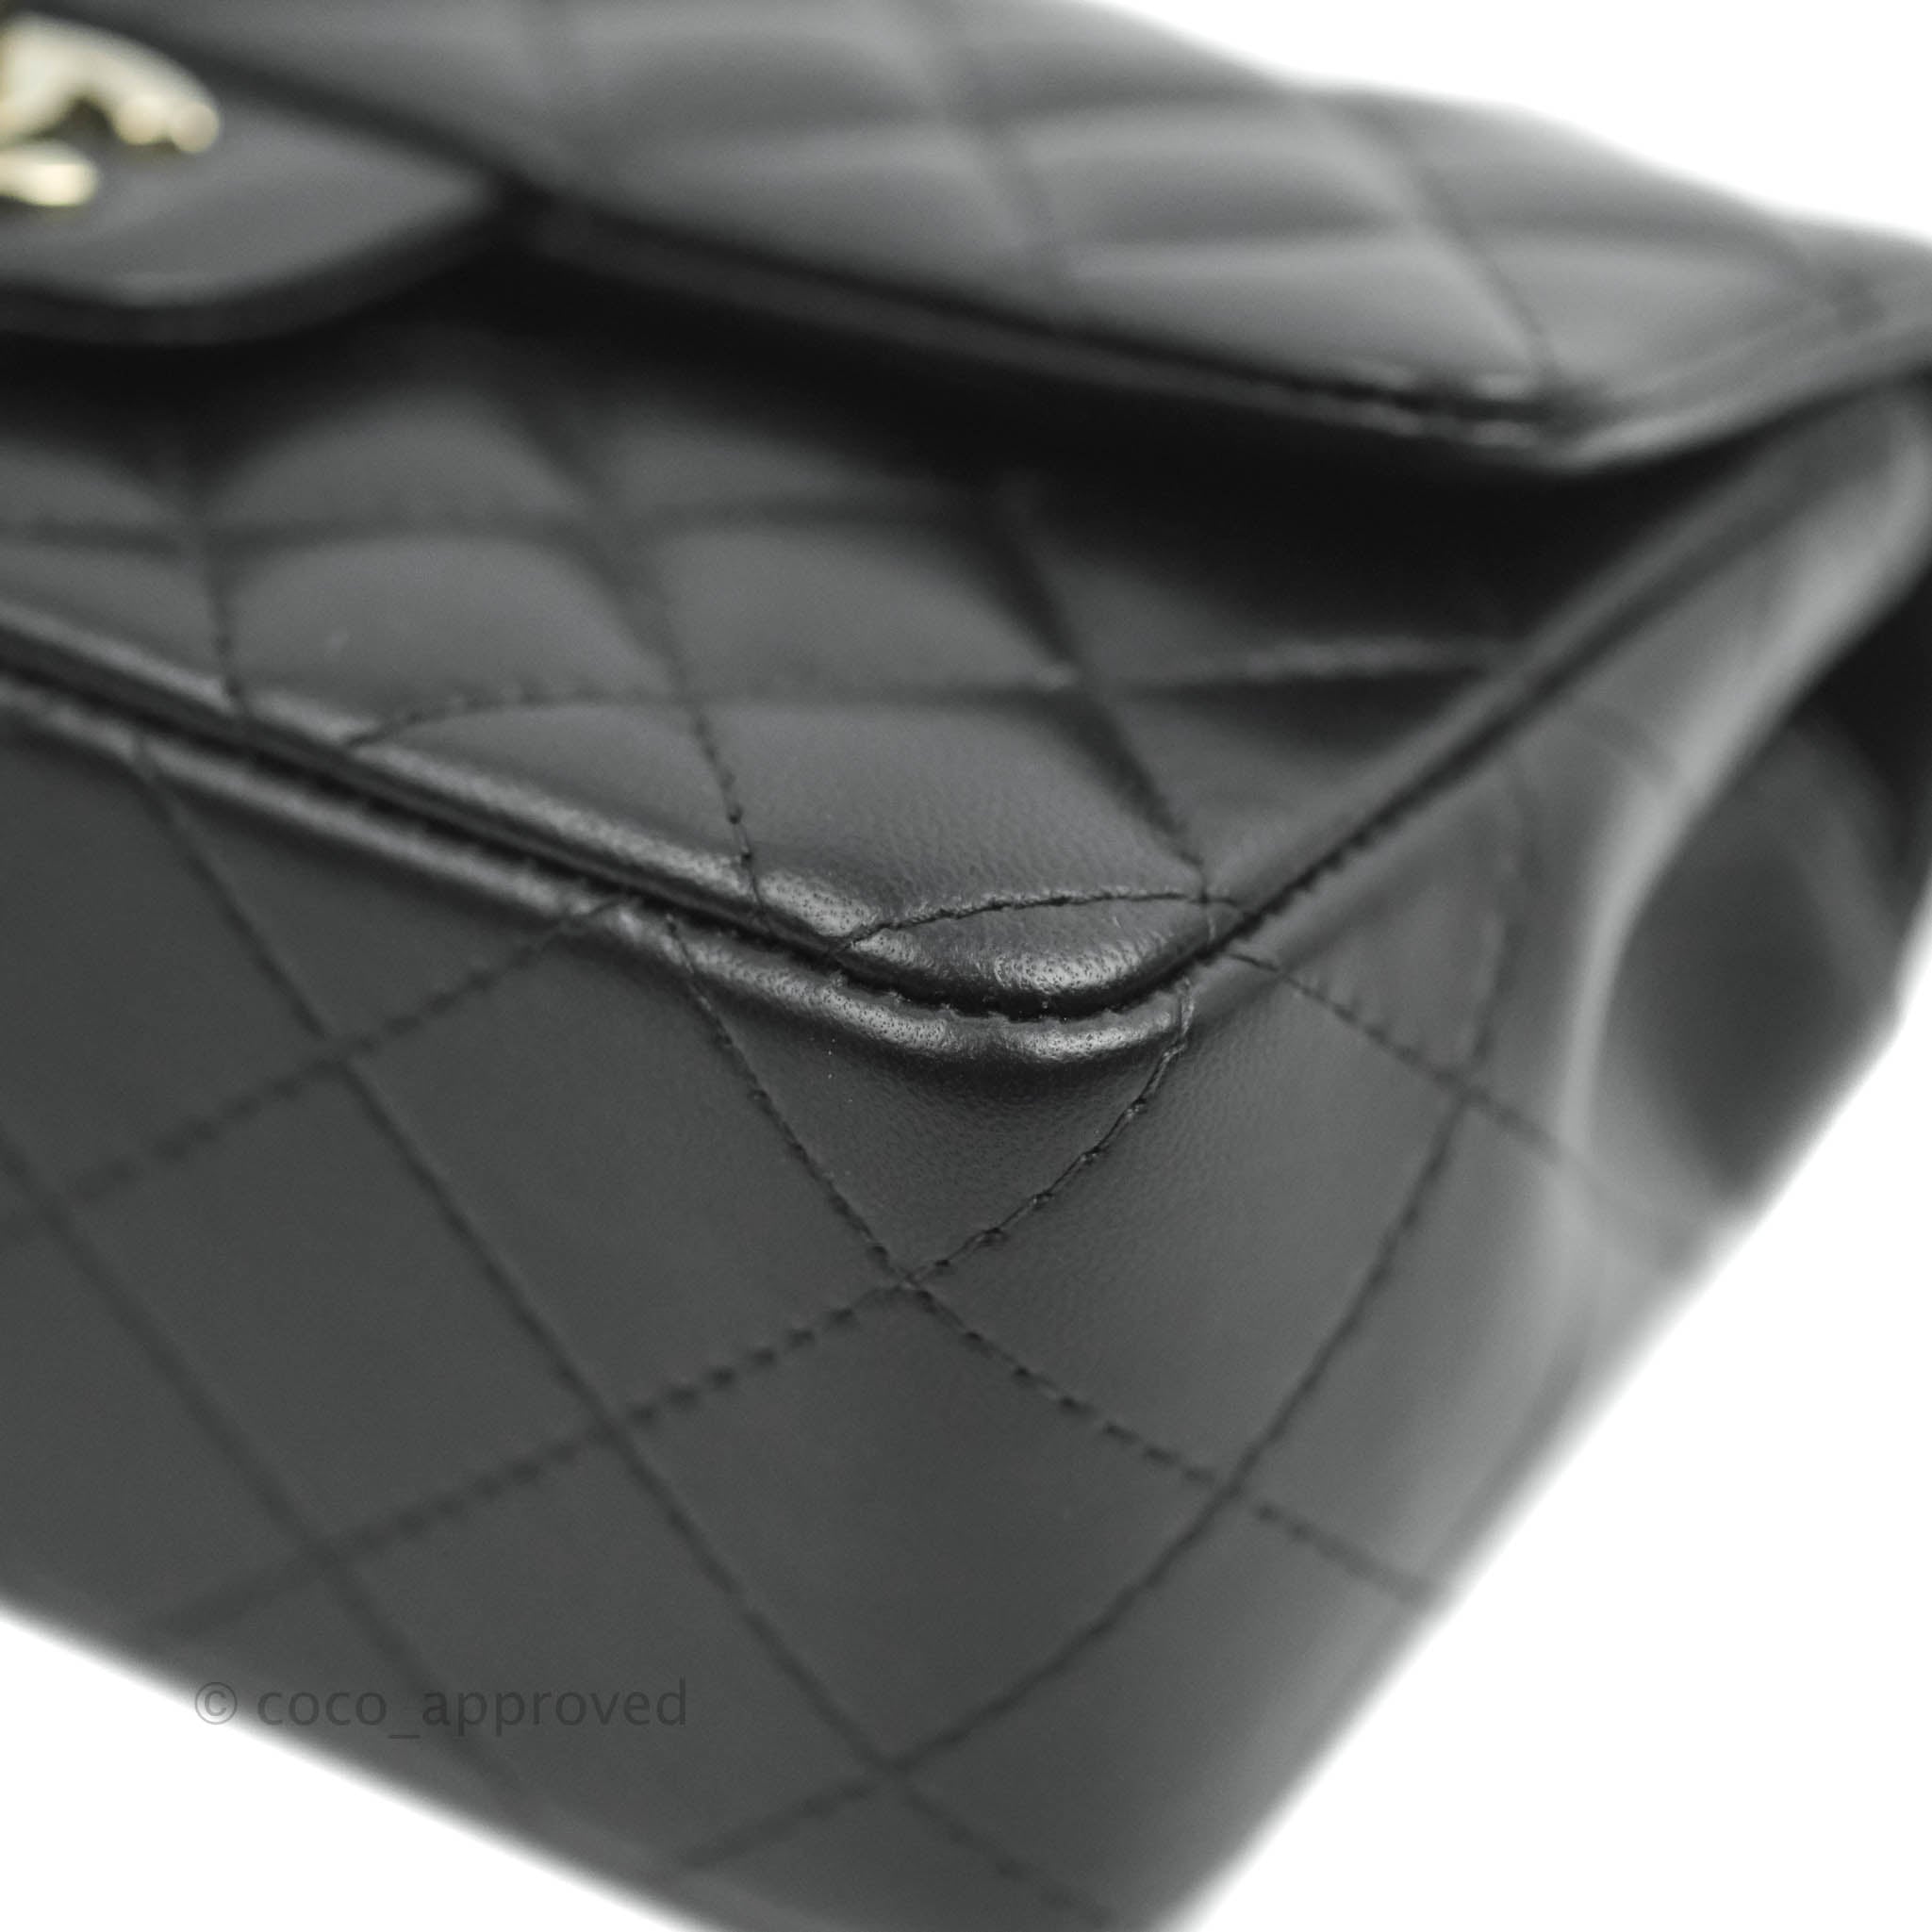 Túi xách Chanel Small flap bag ngọc trai - CNSL021 - Olagood